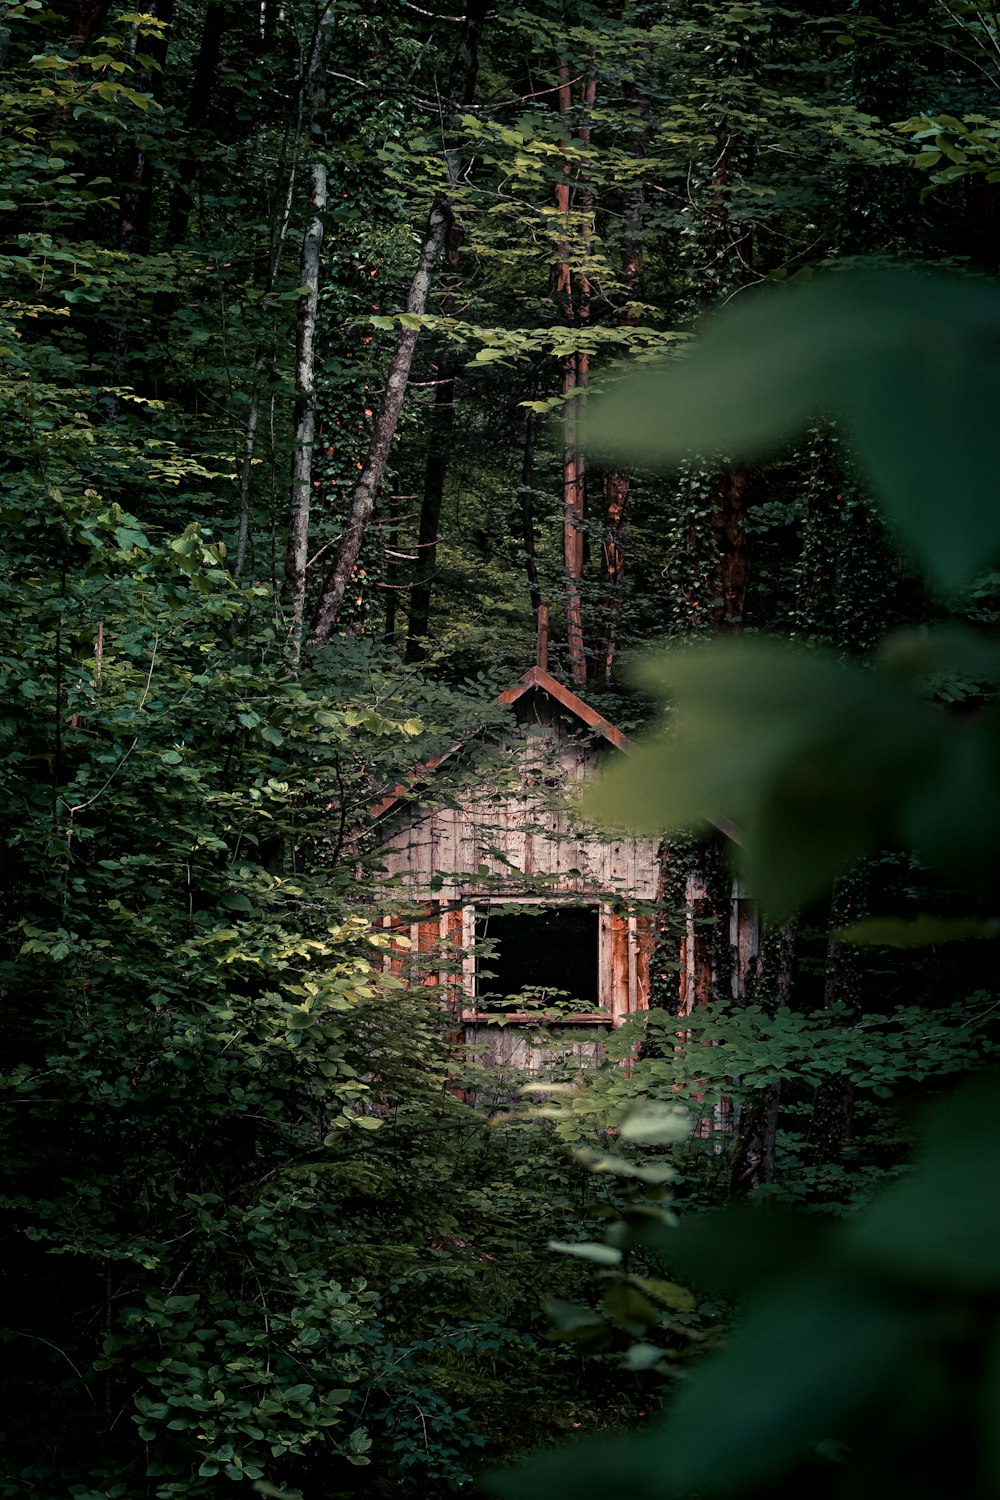 森の真ん中にある茶色の木造家屋